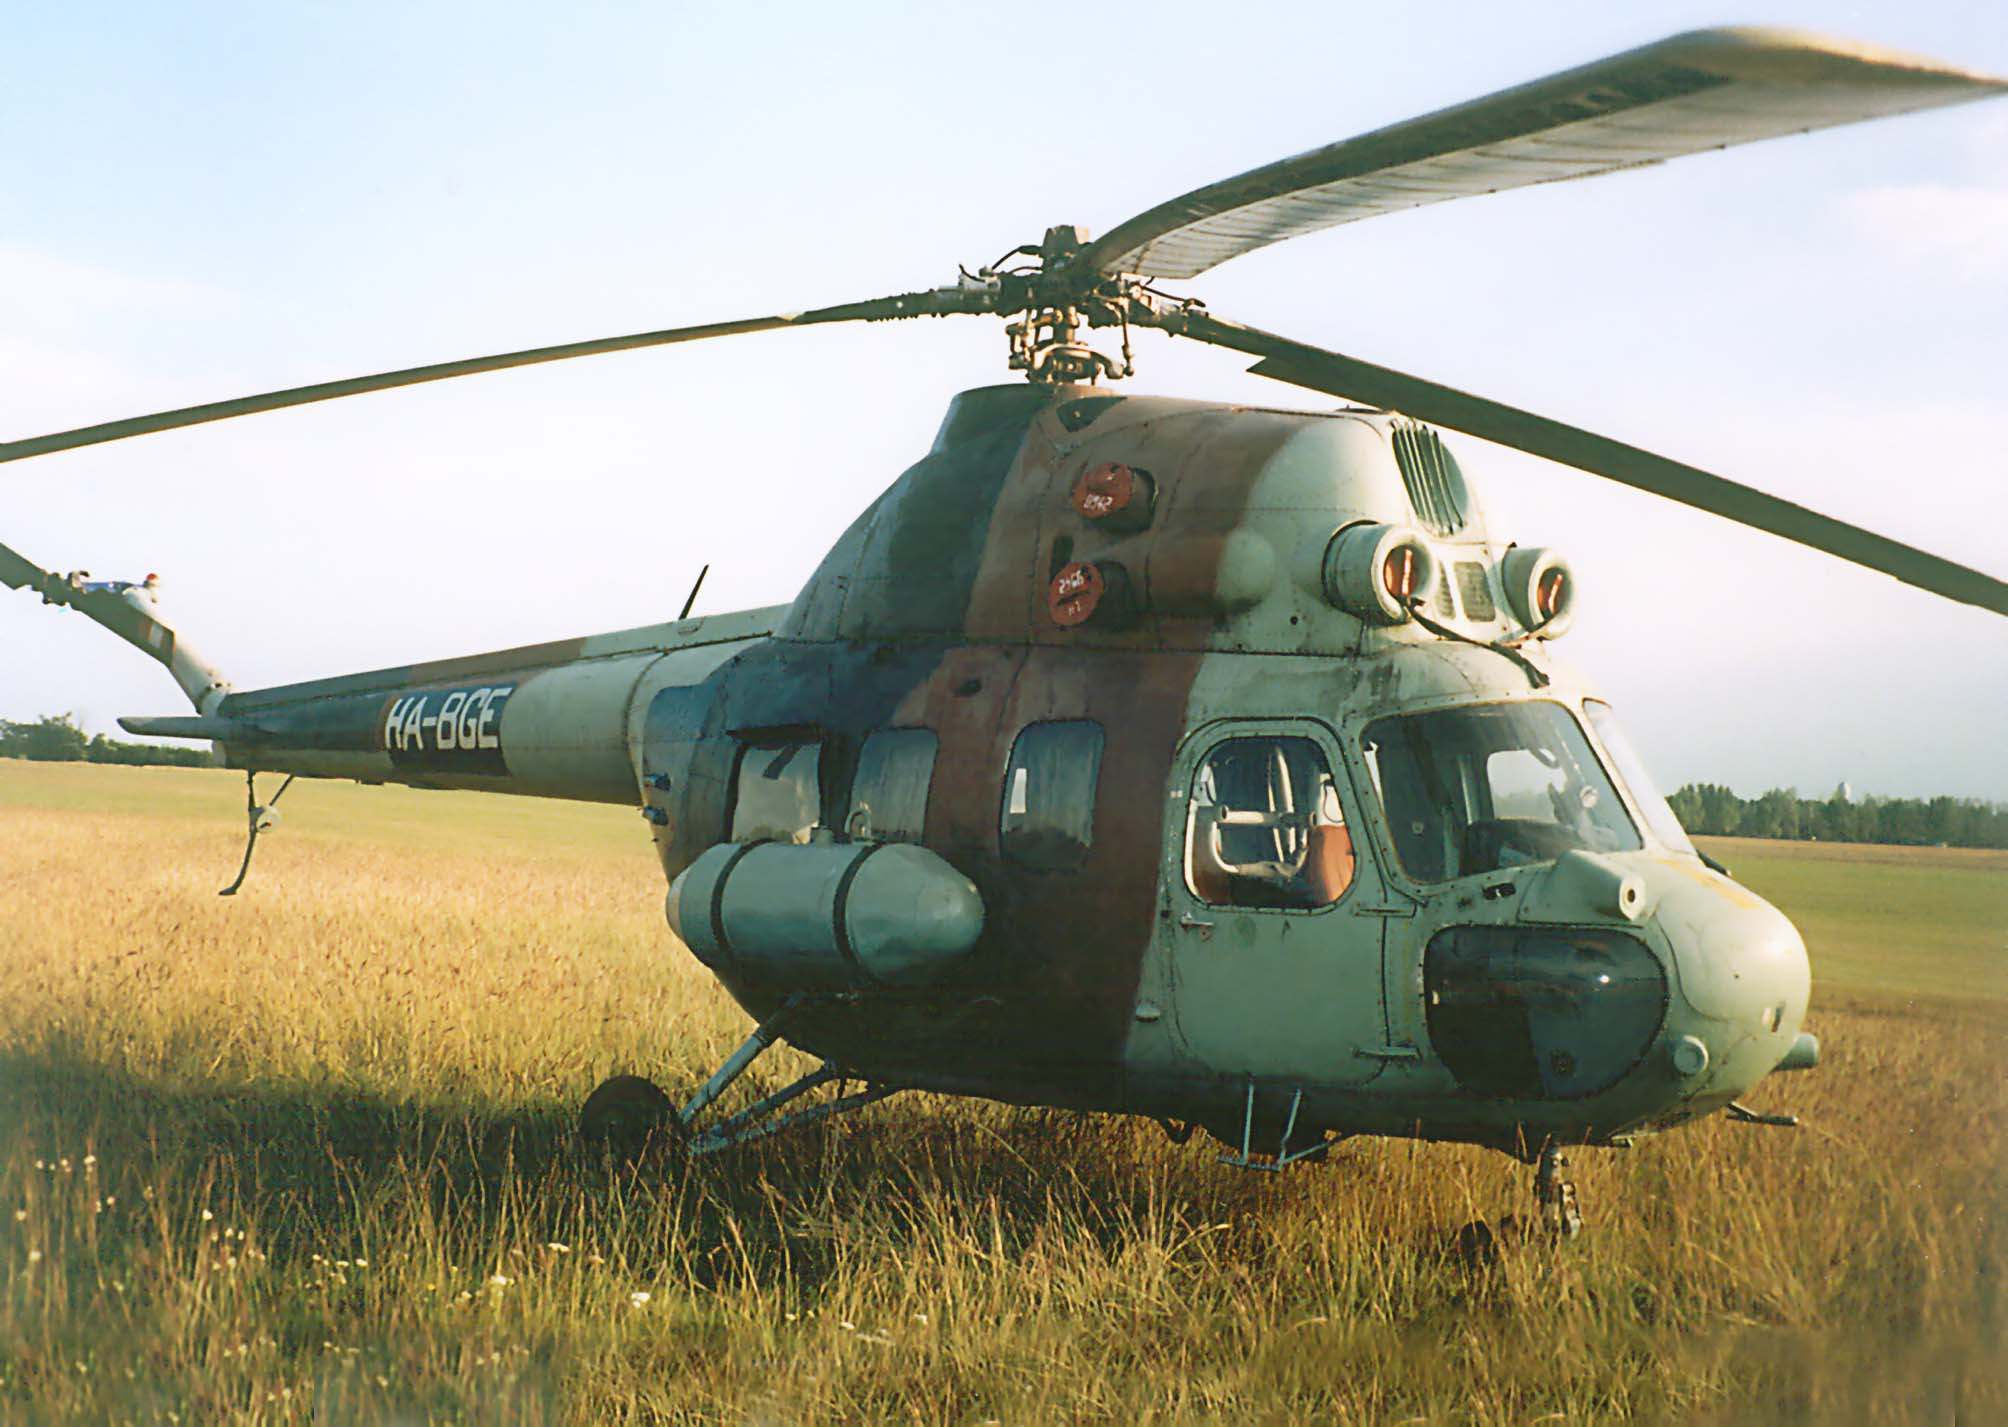 A helikopter jobb oldala közelrıl, némi ellenfényben, Dunakeszin, 1999. szeptember 23-án délután.